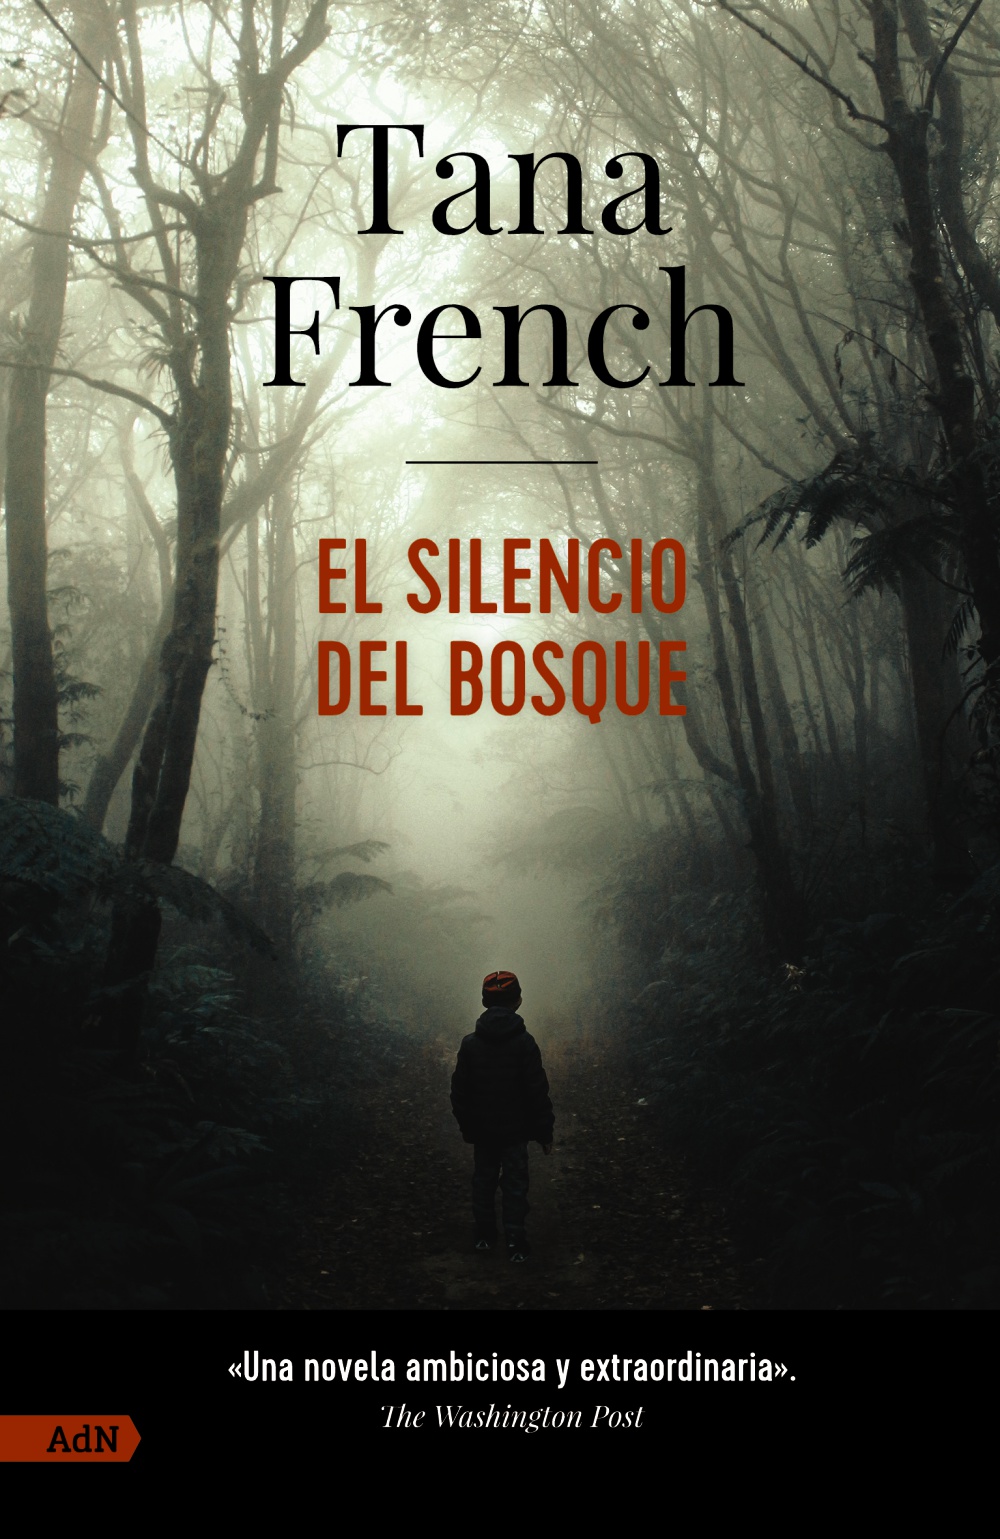 El silencio del bosque - Tana  French 